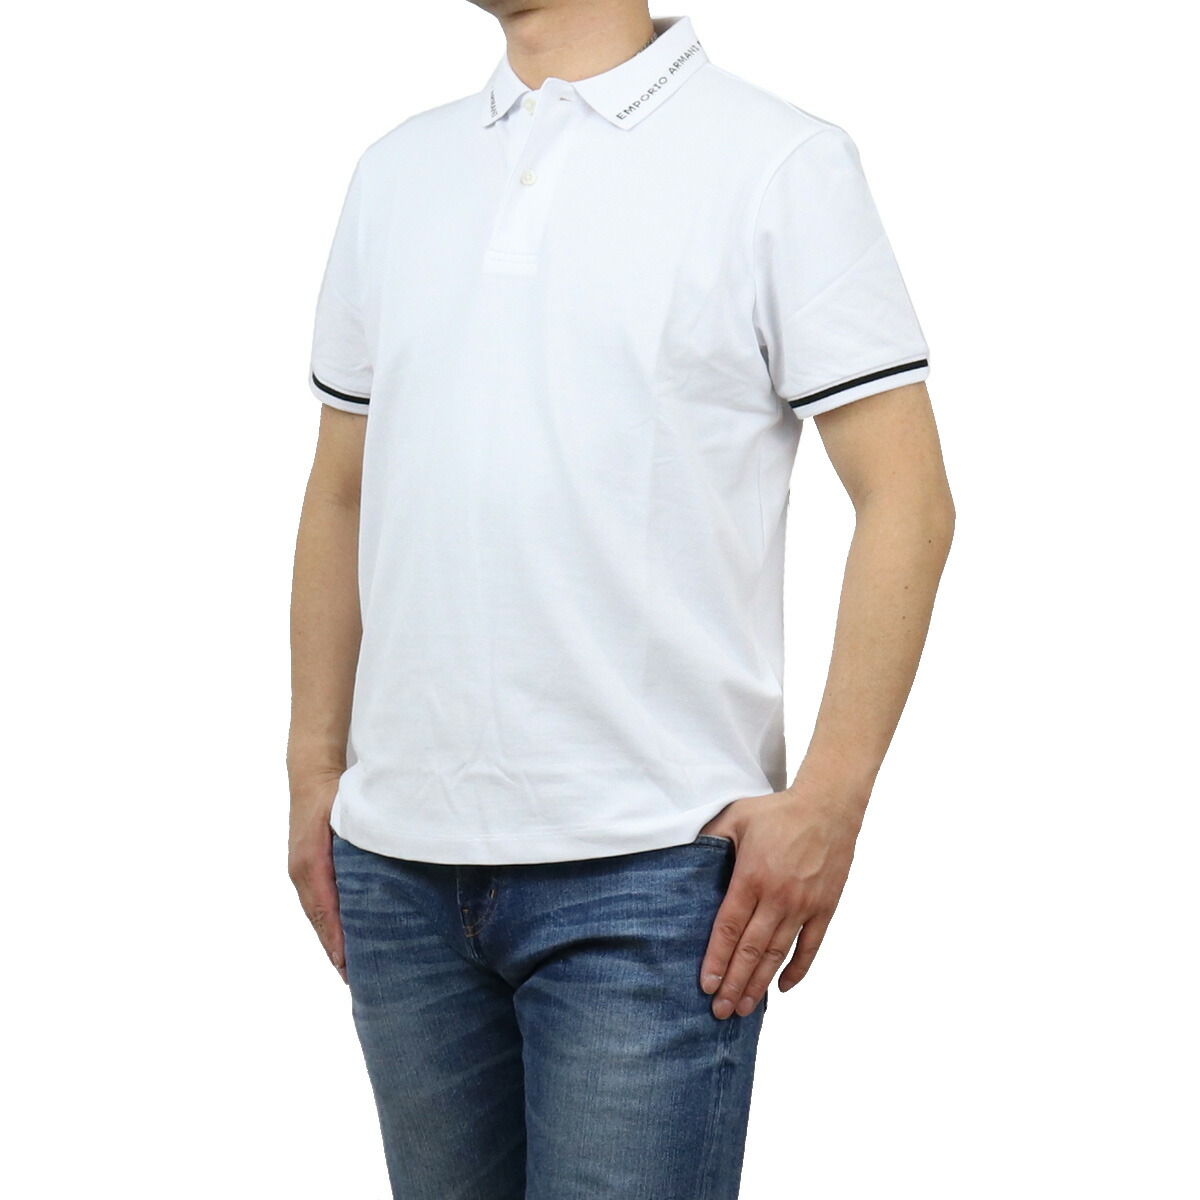 【国内未入荷商品】EMPORIO ARMANI メンズポロシャツ